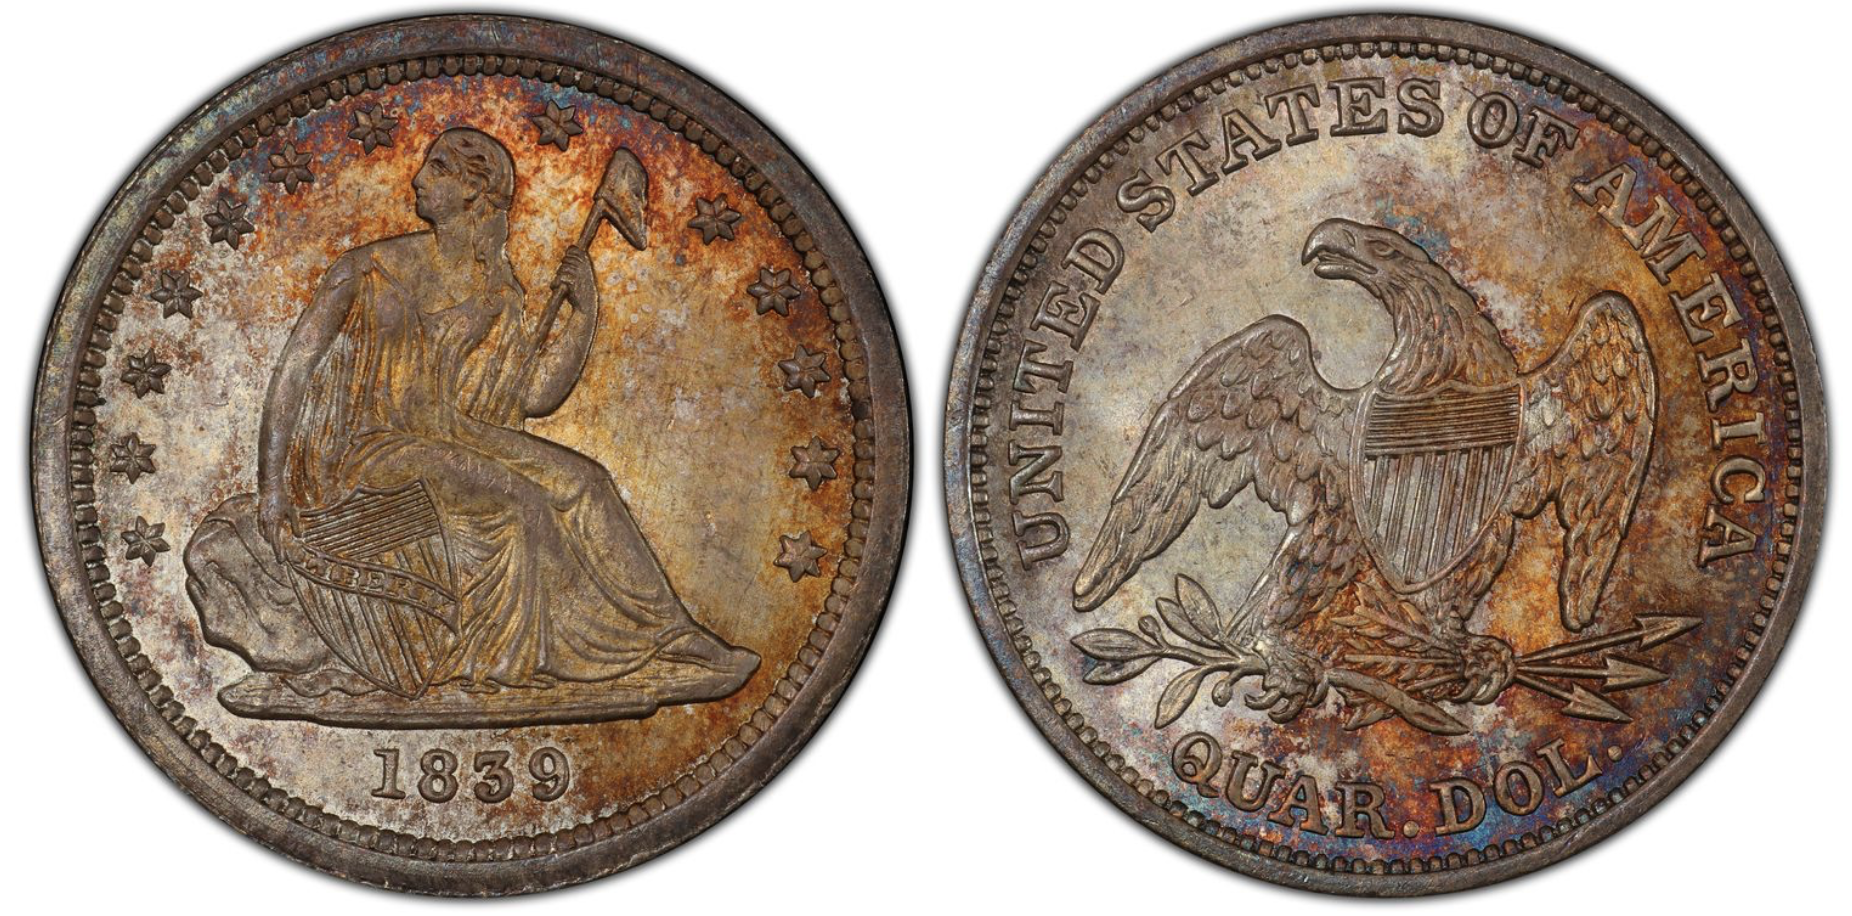 silver quarter value